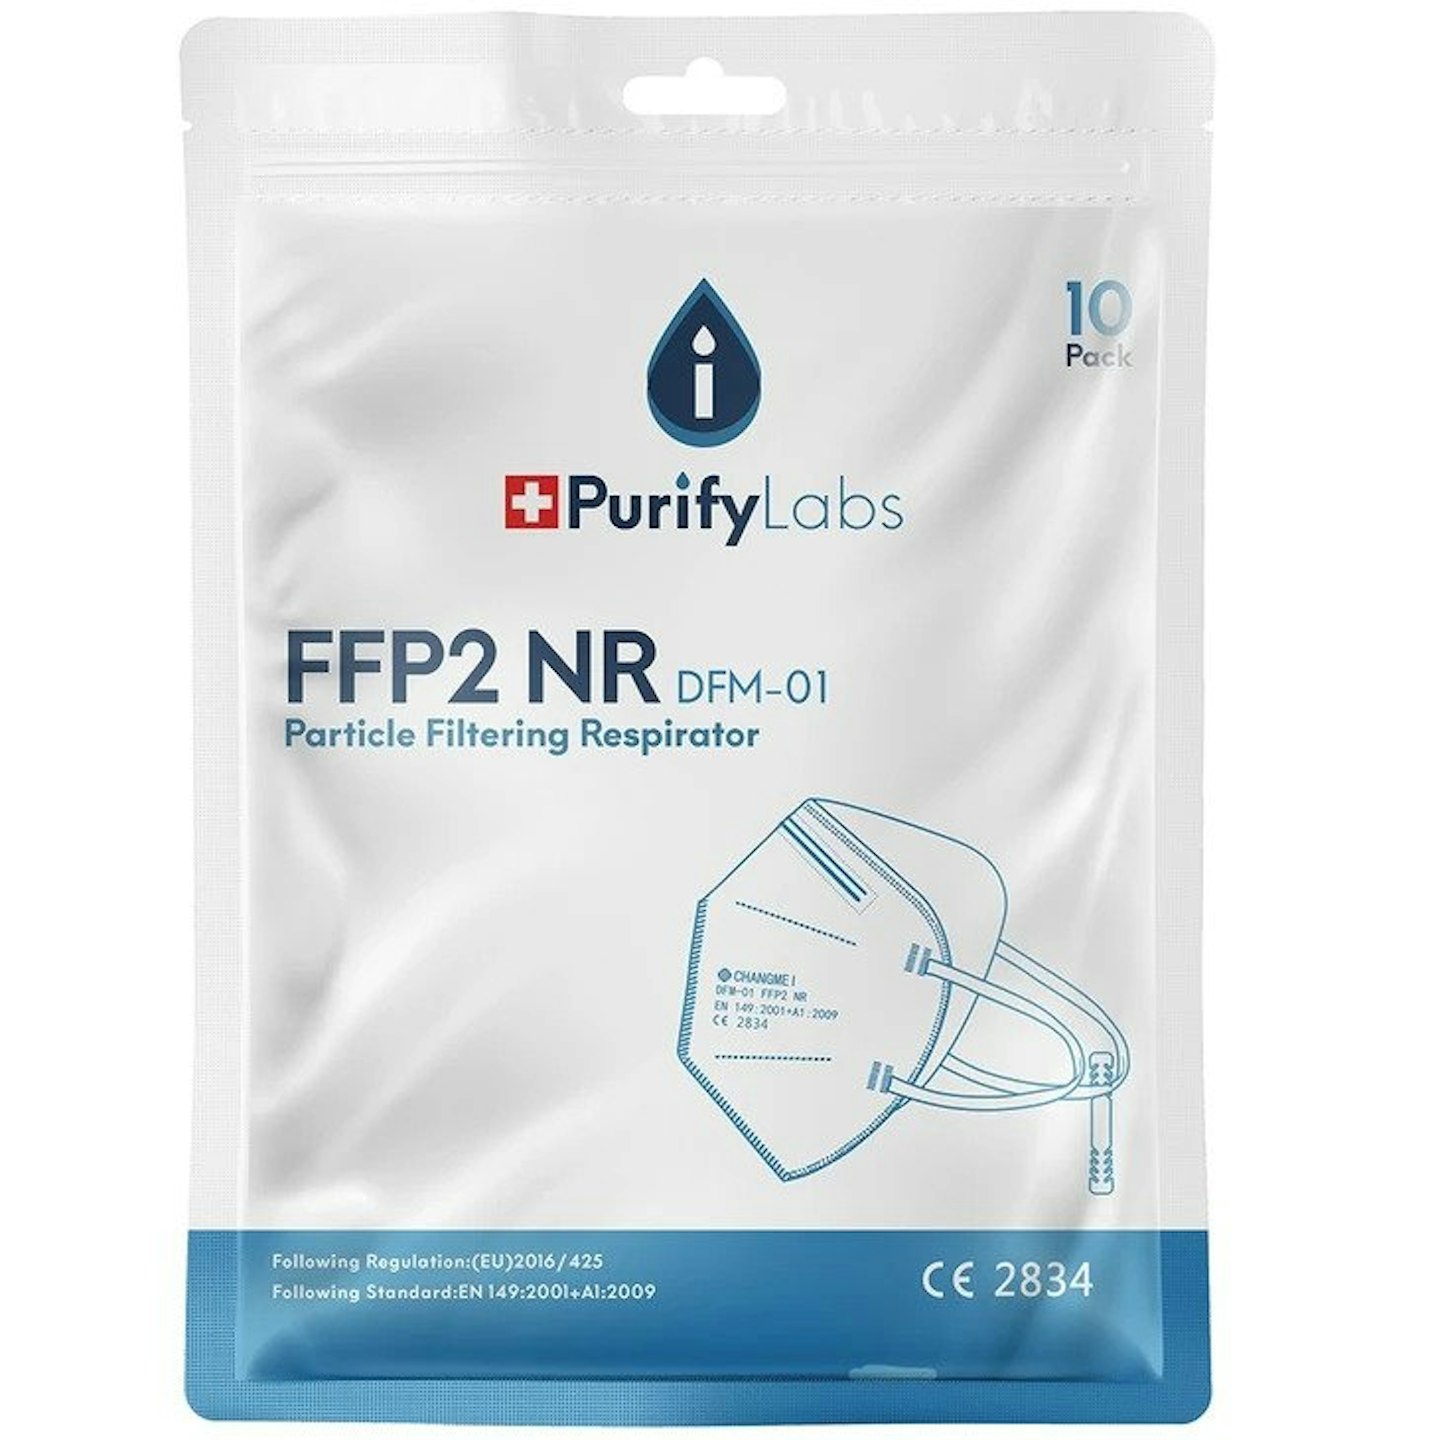 PurifyLabs FFP2 face masks, 10 masks for £15.49